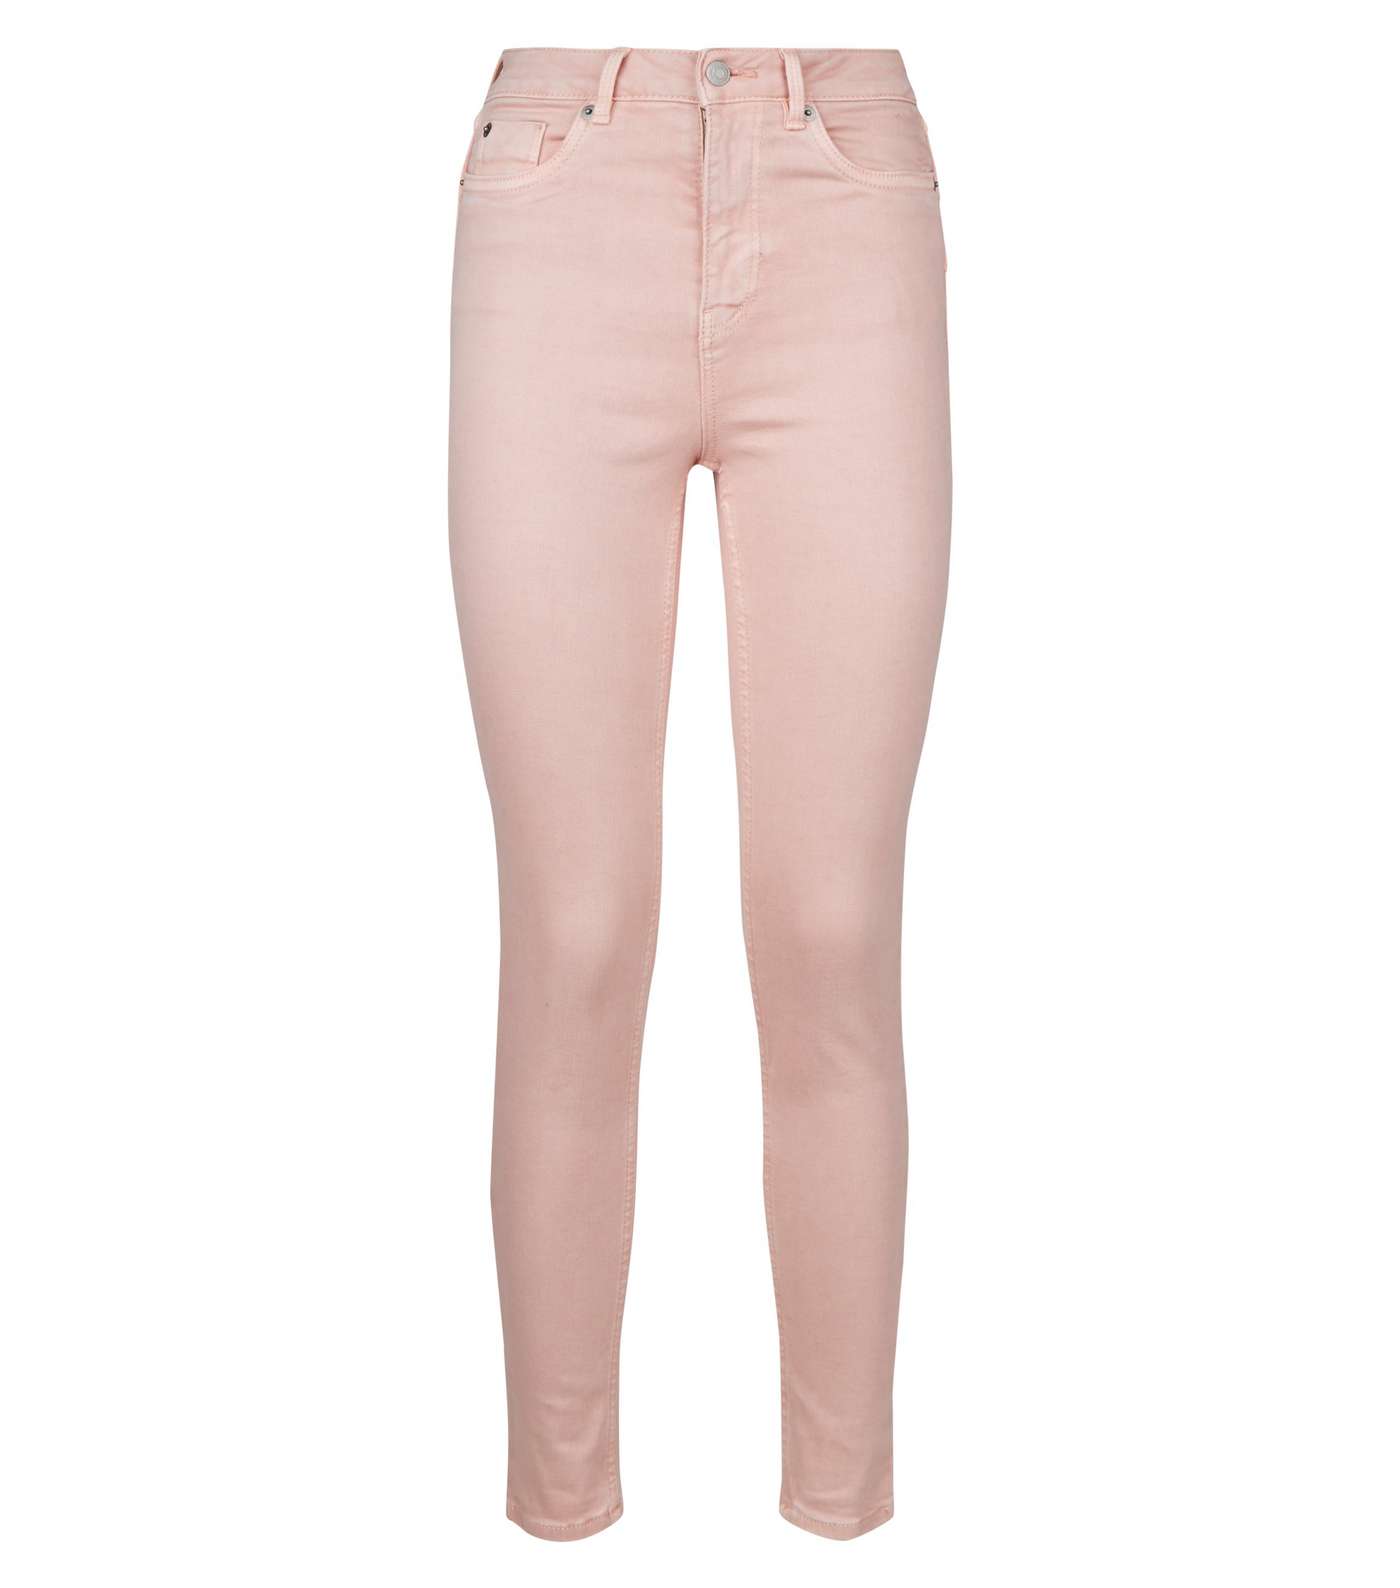 Pink High Waist 'Lift & Shape' Skinny Jeans Image 4